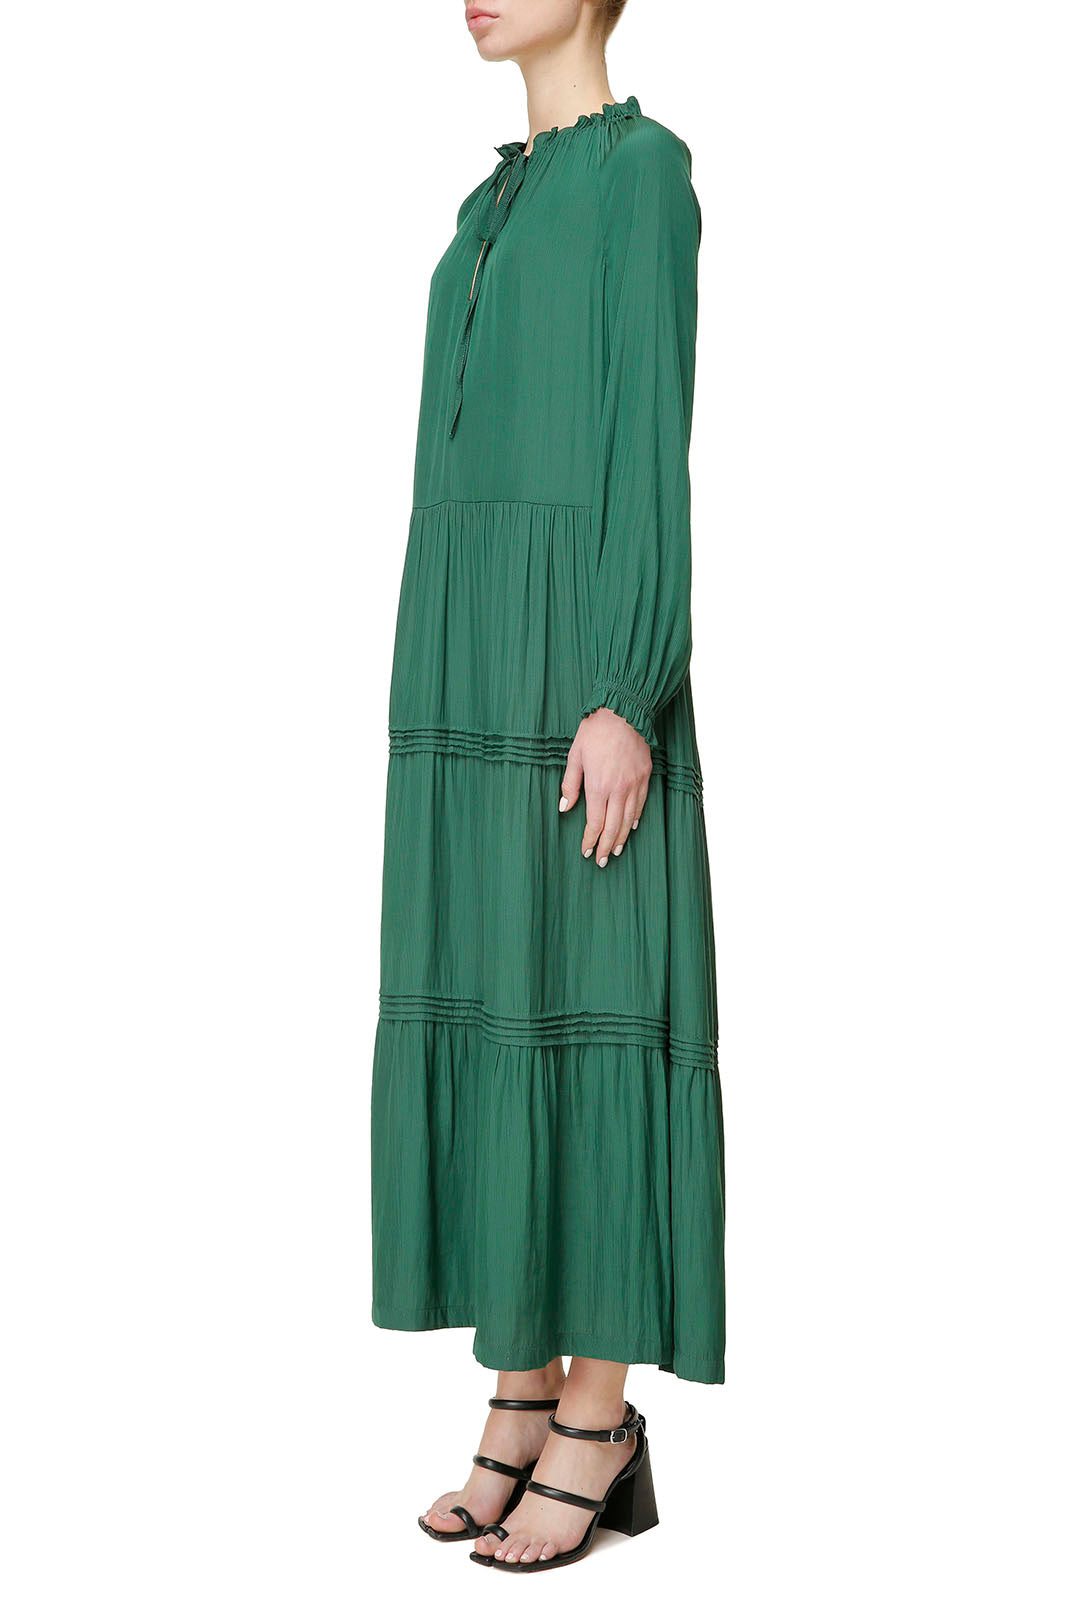 Green midi dress